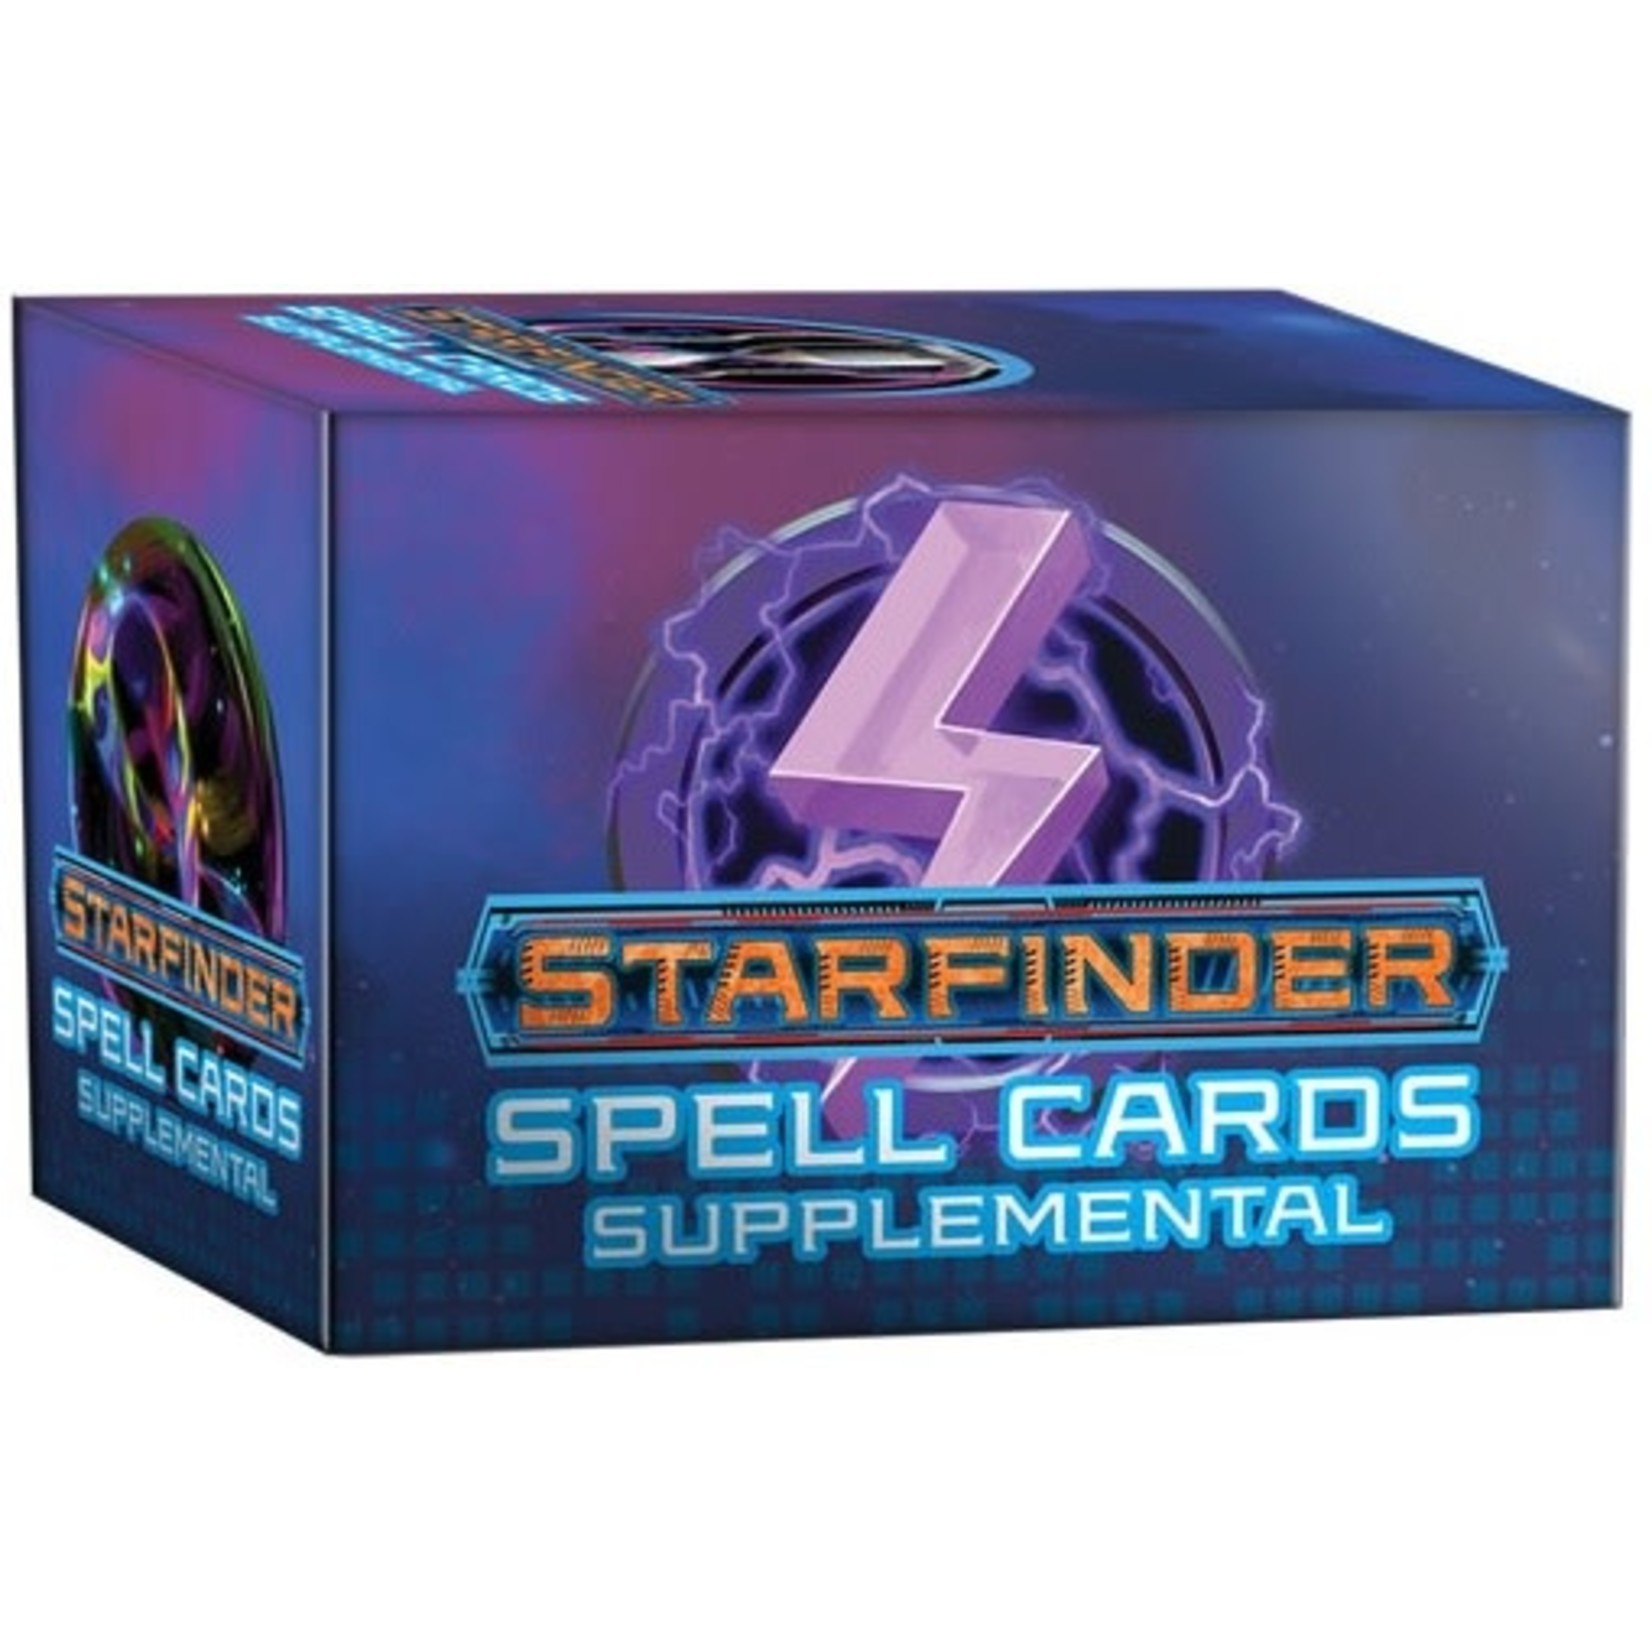 Starfinder Starfinder Spell Cards Supplemental